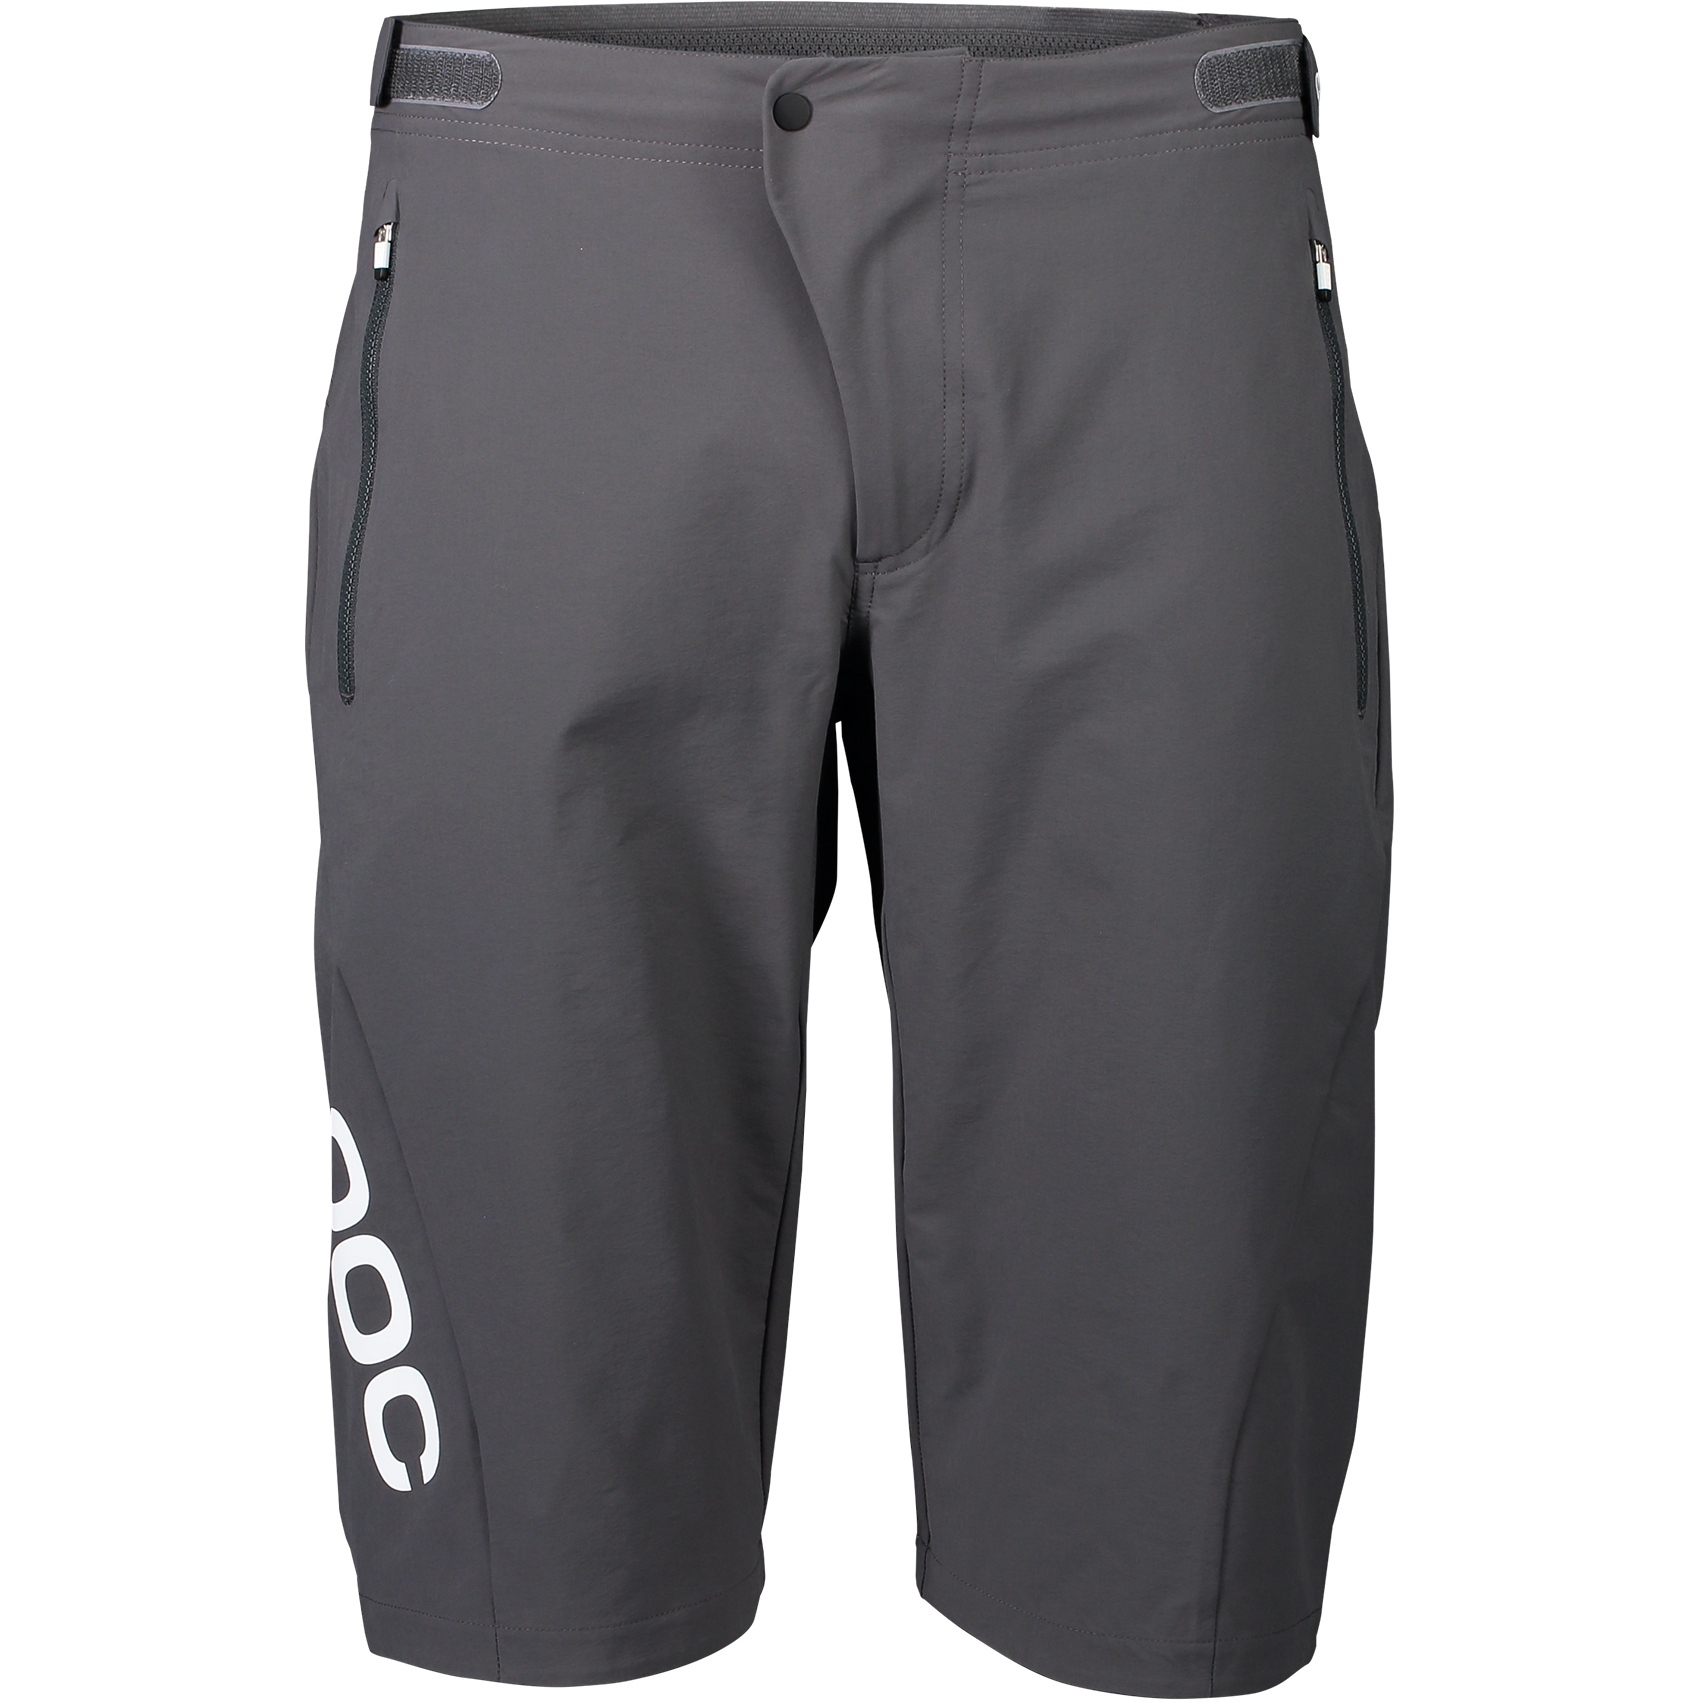 Produktbild von POC Essential Enduro Shorts Herren - 1043 Sylvanite Grey